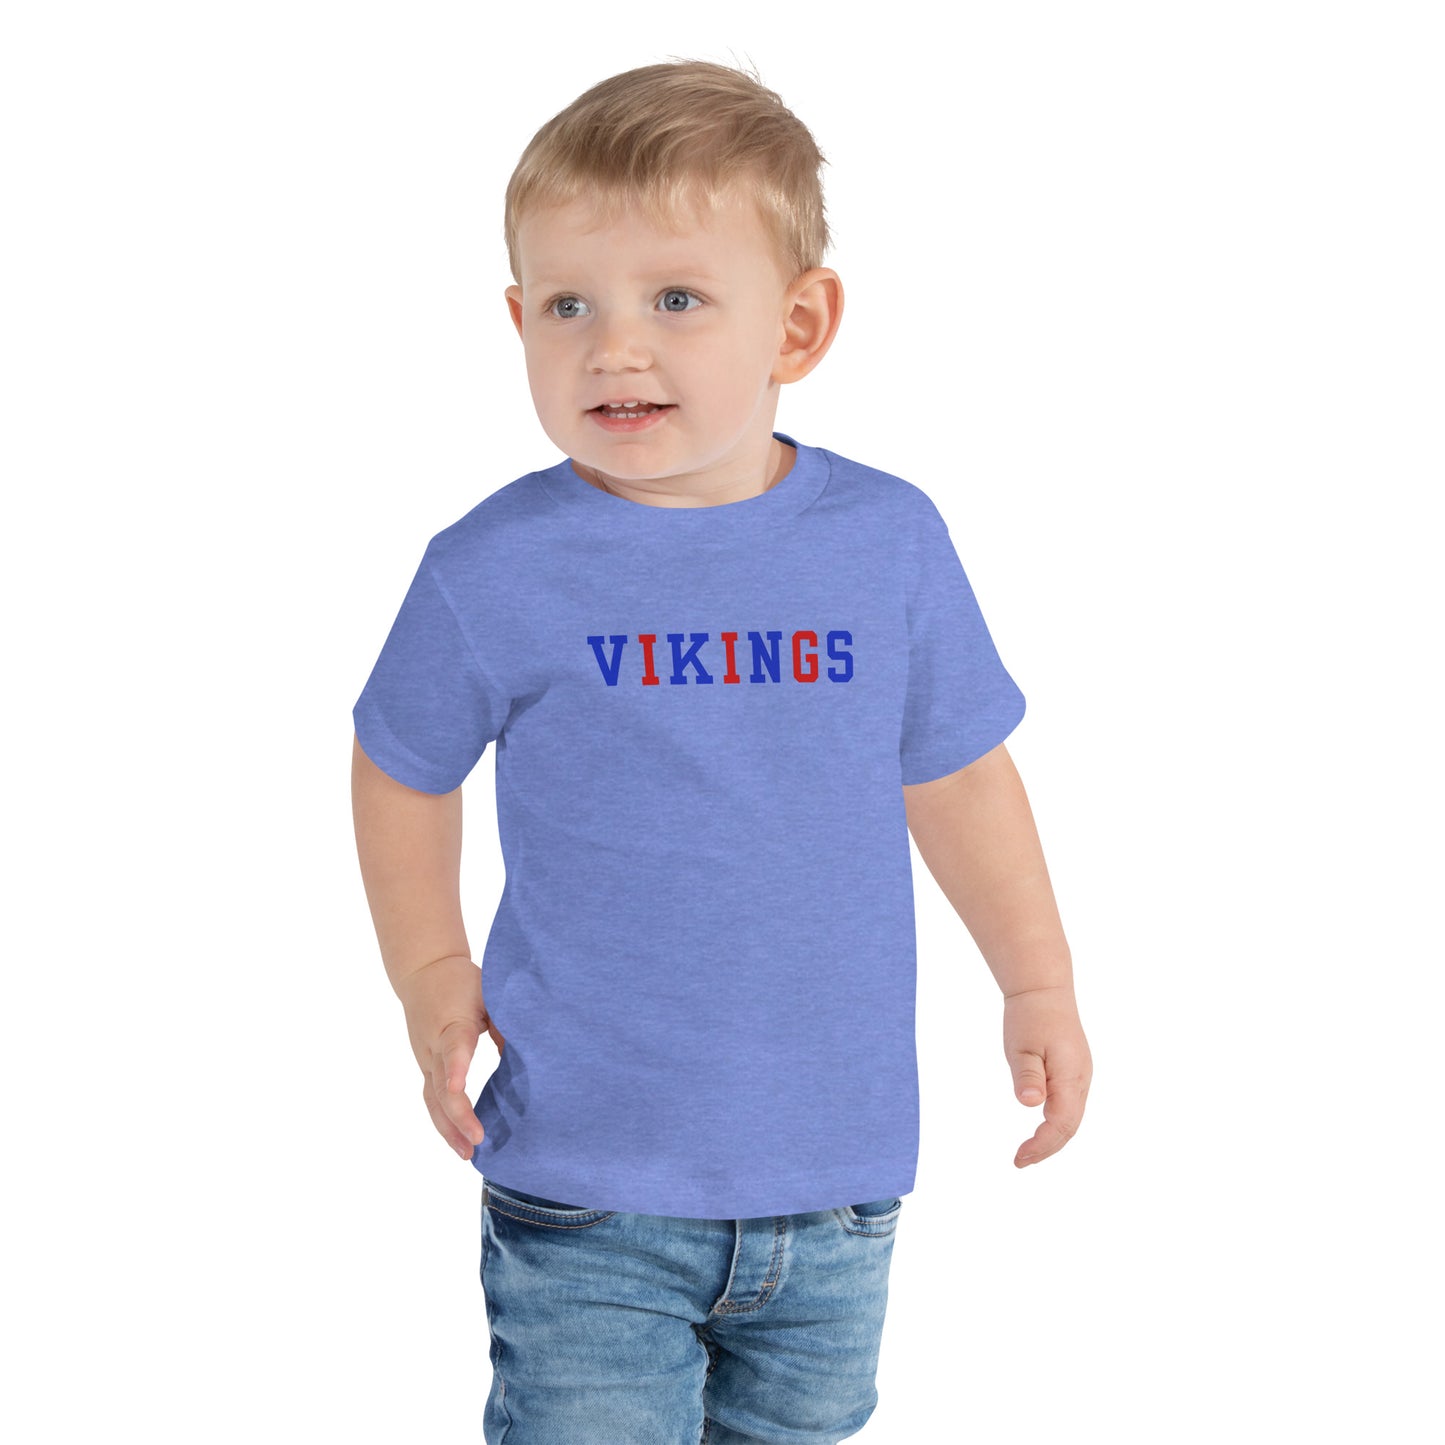 Vikings - Toddler